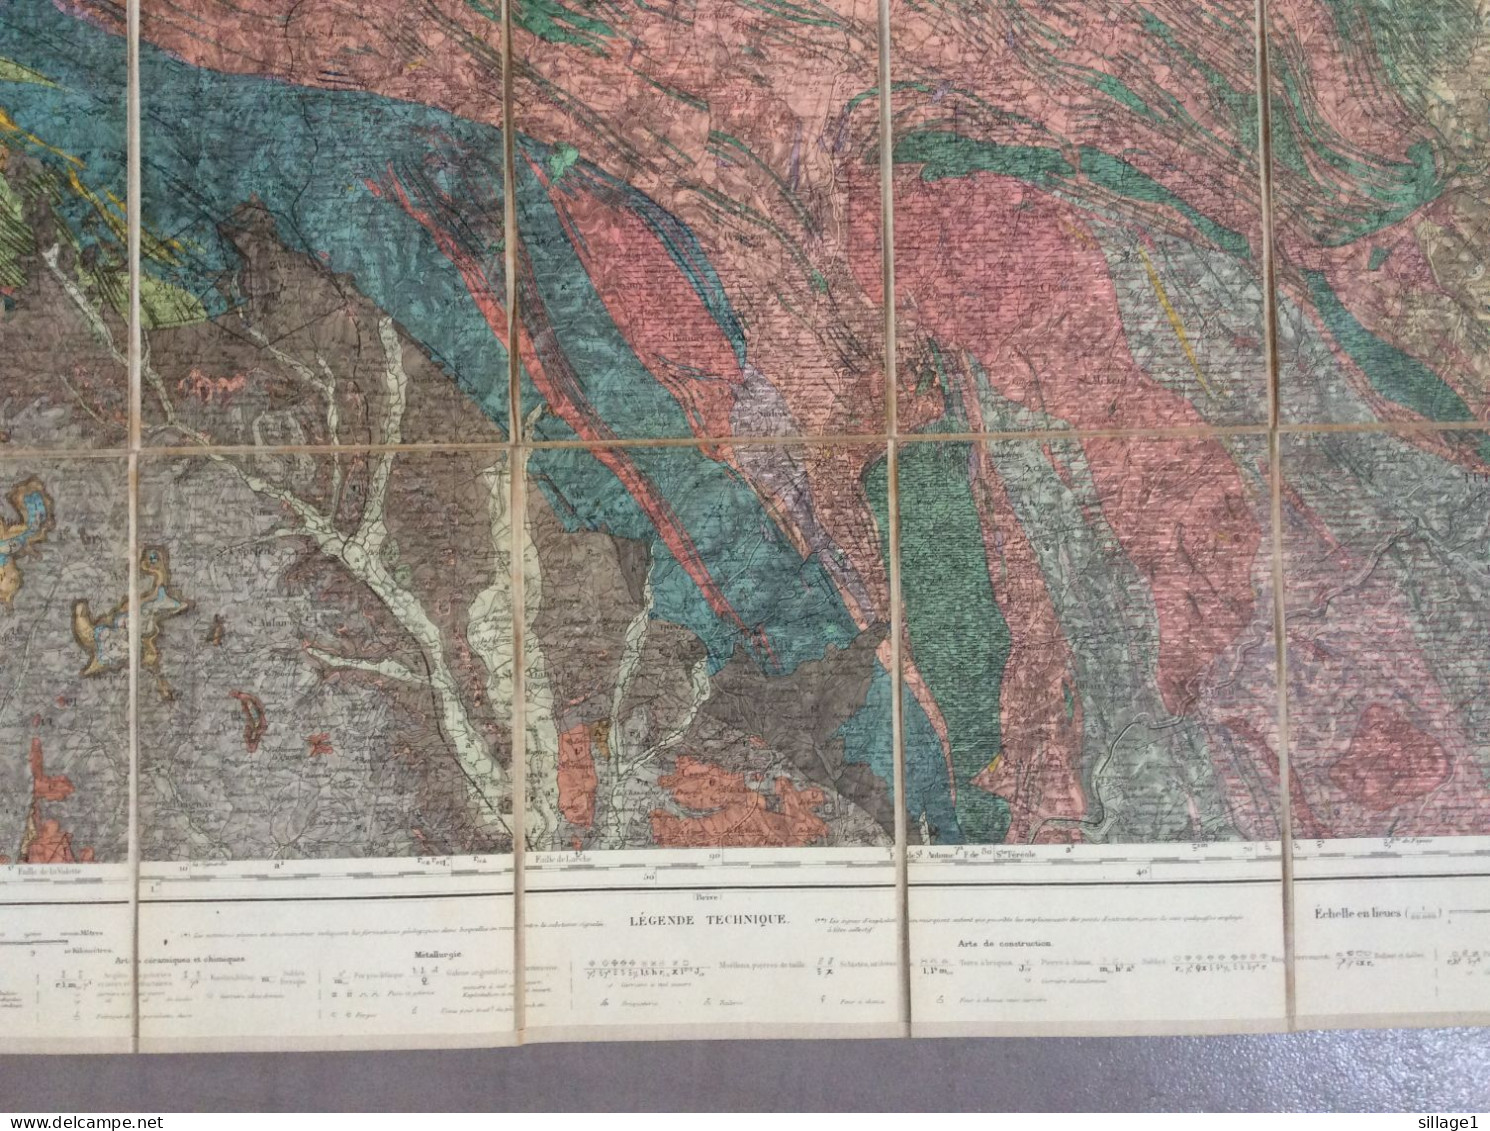 TULLE et sa Région - MAISON ANDRIVEAU-GOUJON - Henri BARRÈRE Carte Géologique Ancienne Colorisée sur toile